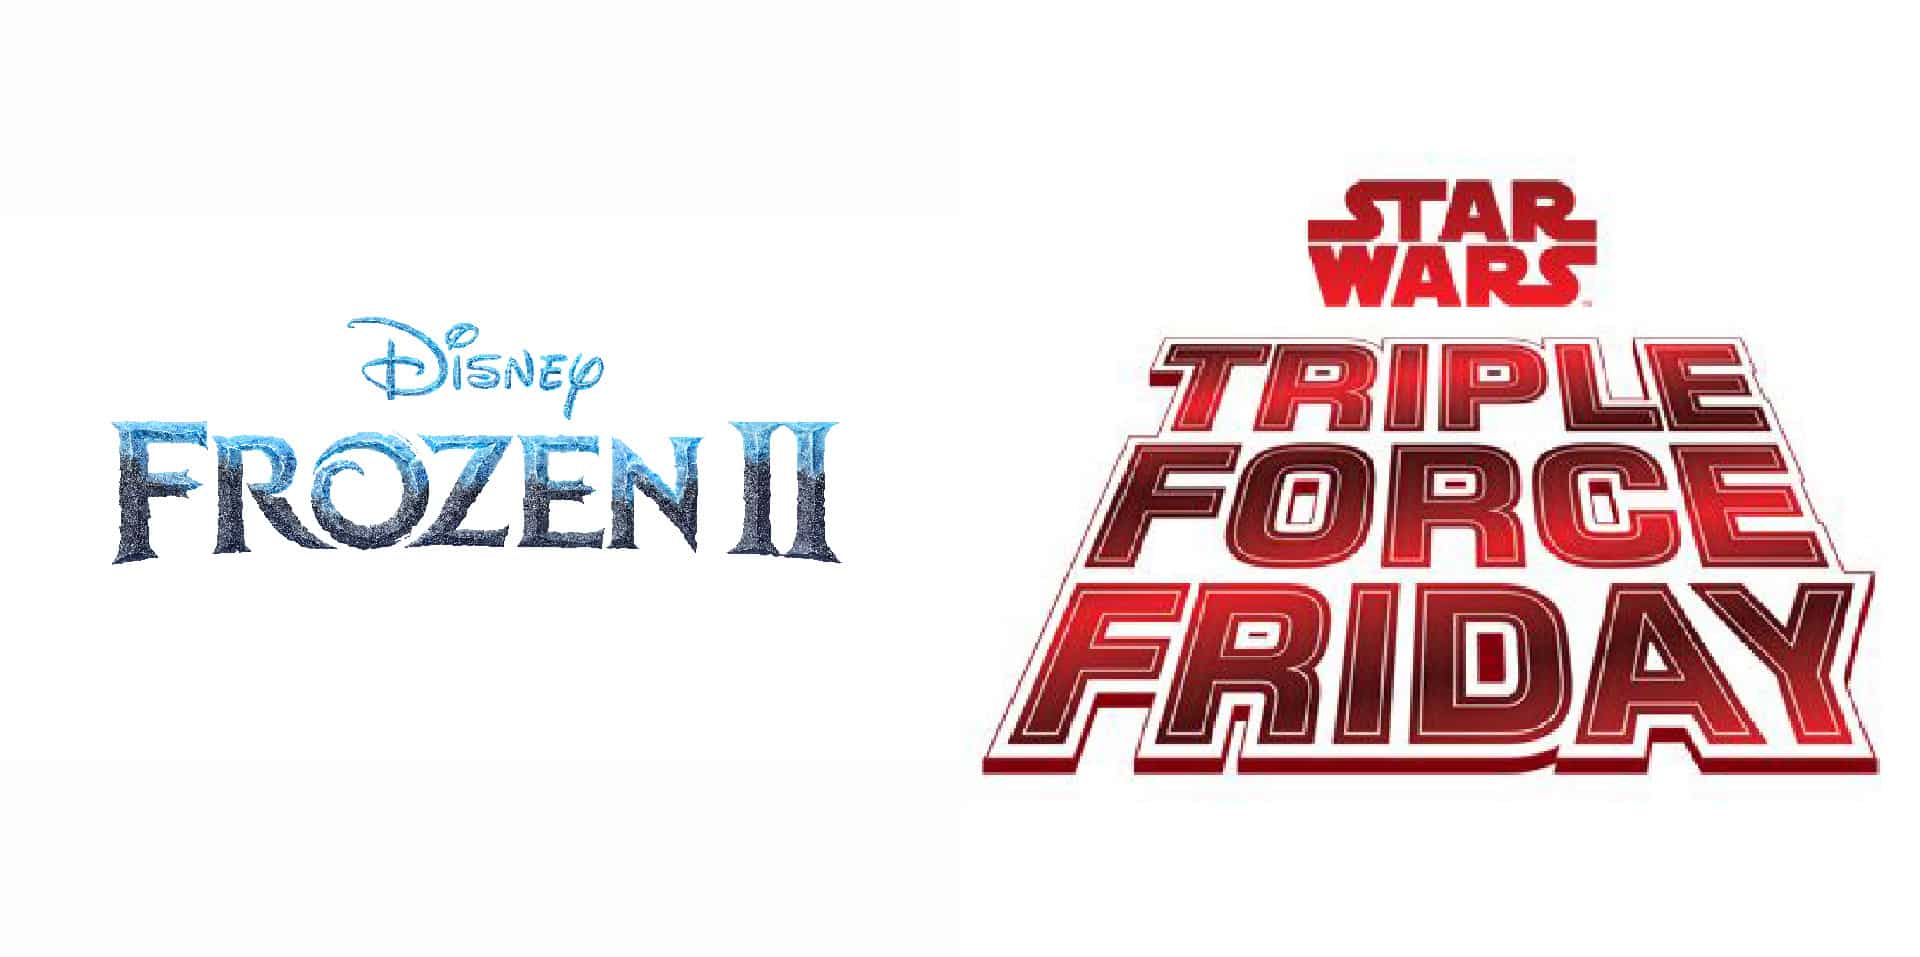 Star Wars e Frozen 2: Disney annuncia lancio di prodotti senza precedenti